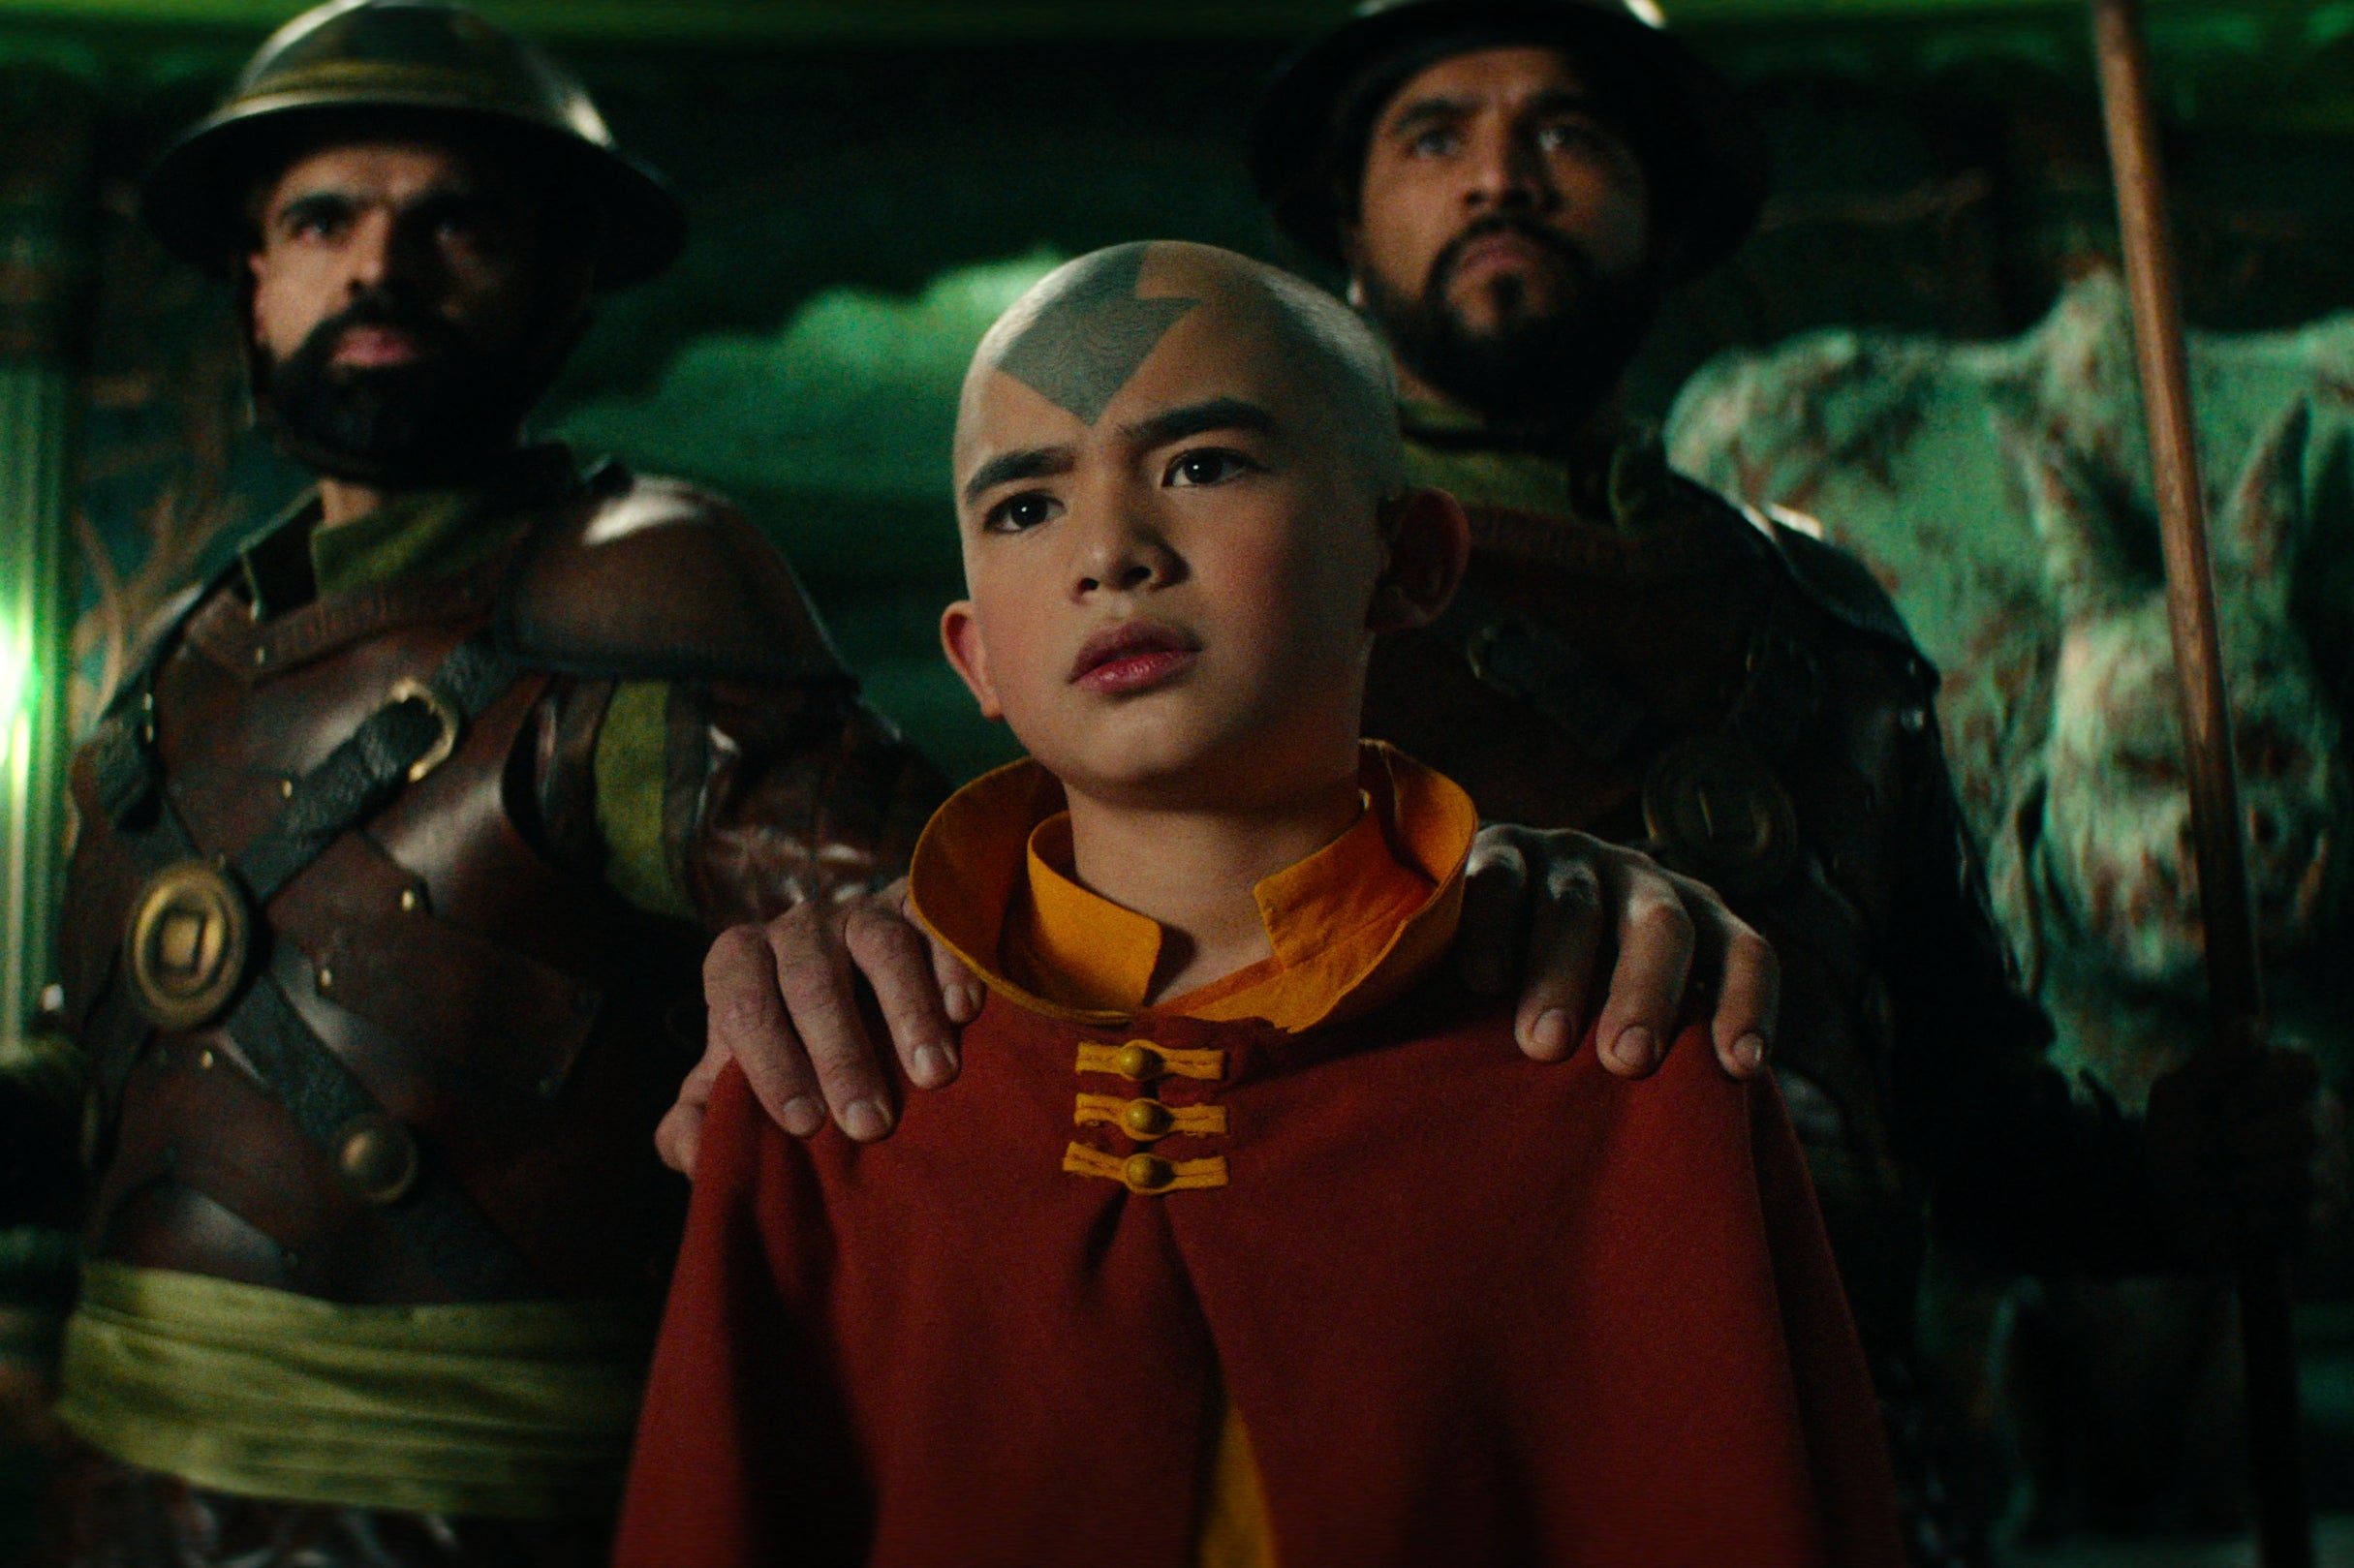 Gordon Cormier as Aang in ‘Avatar: The Last Airbender’